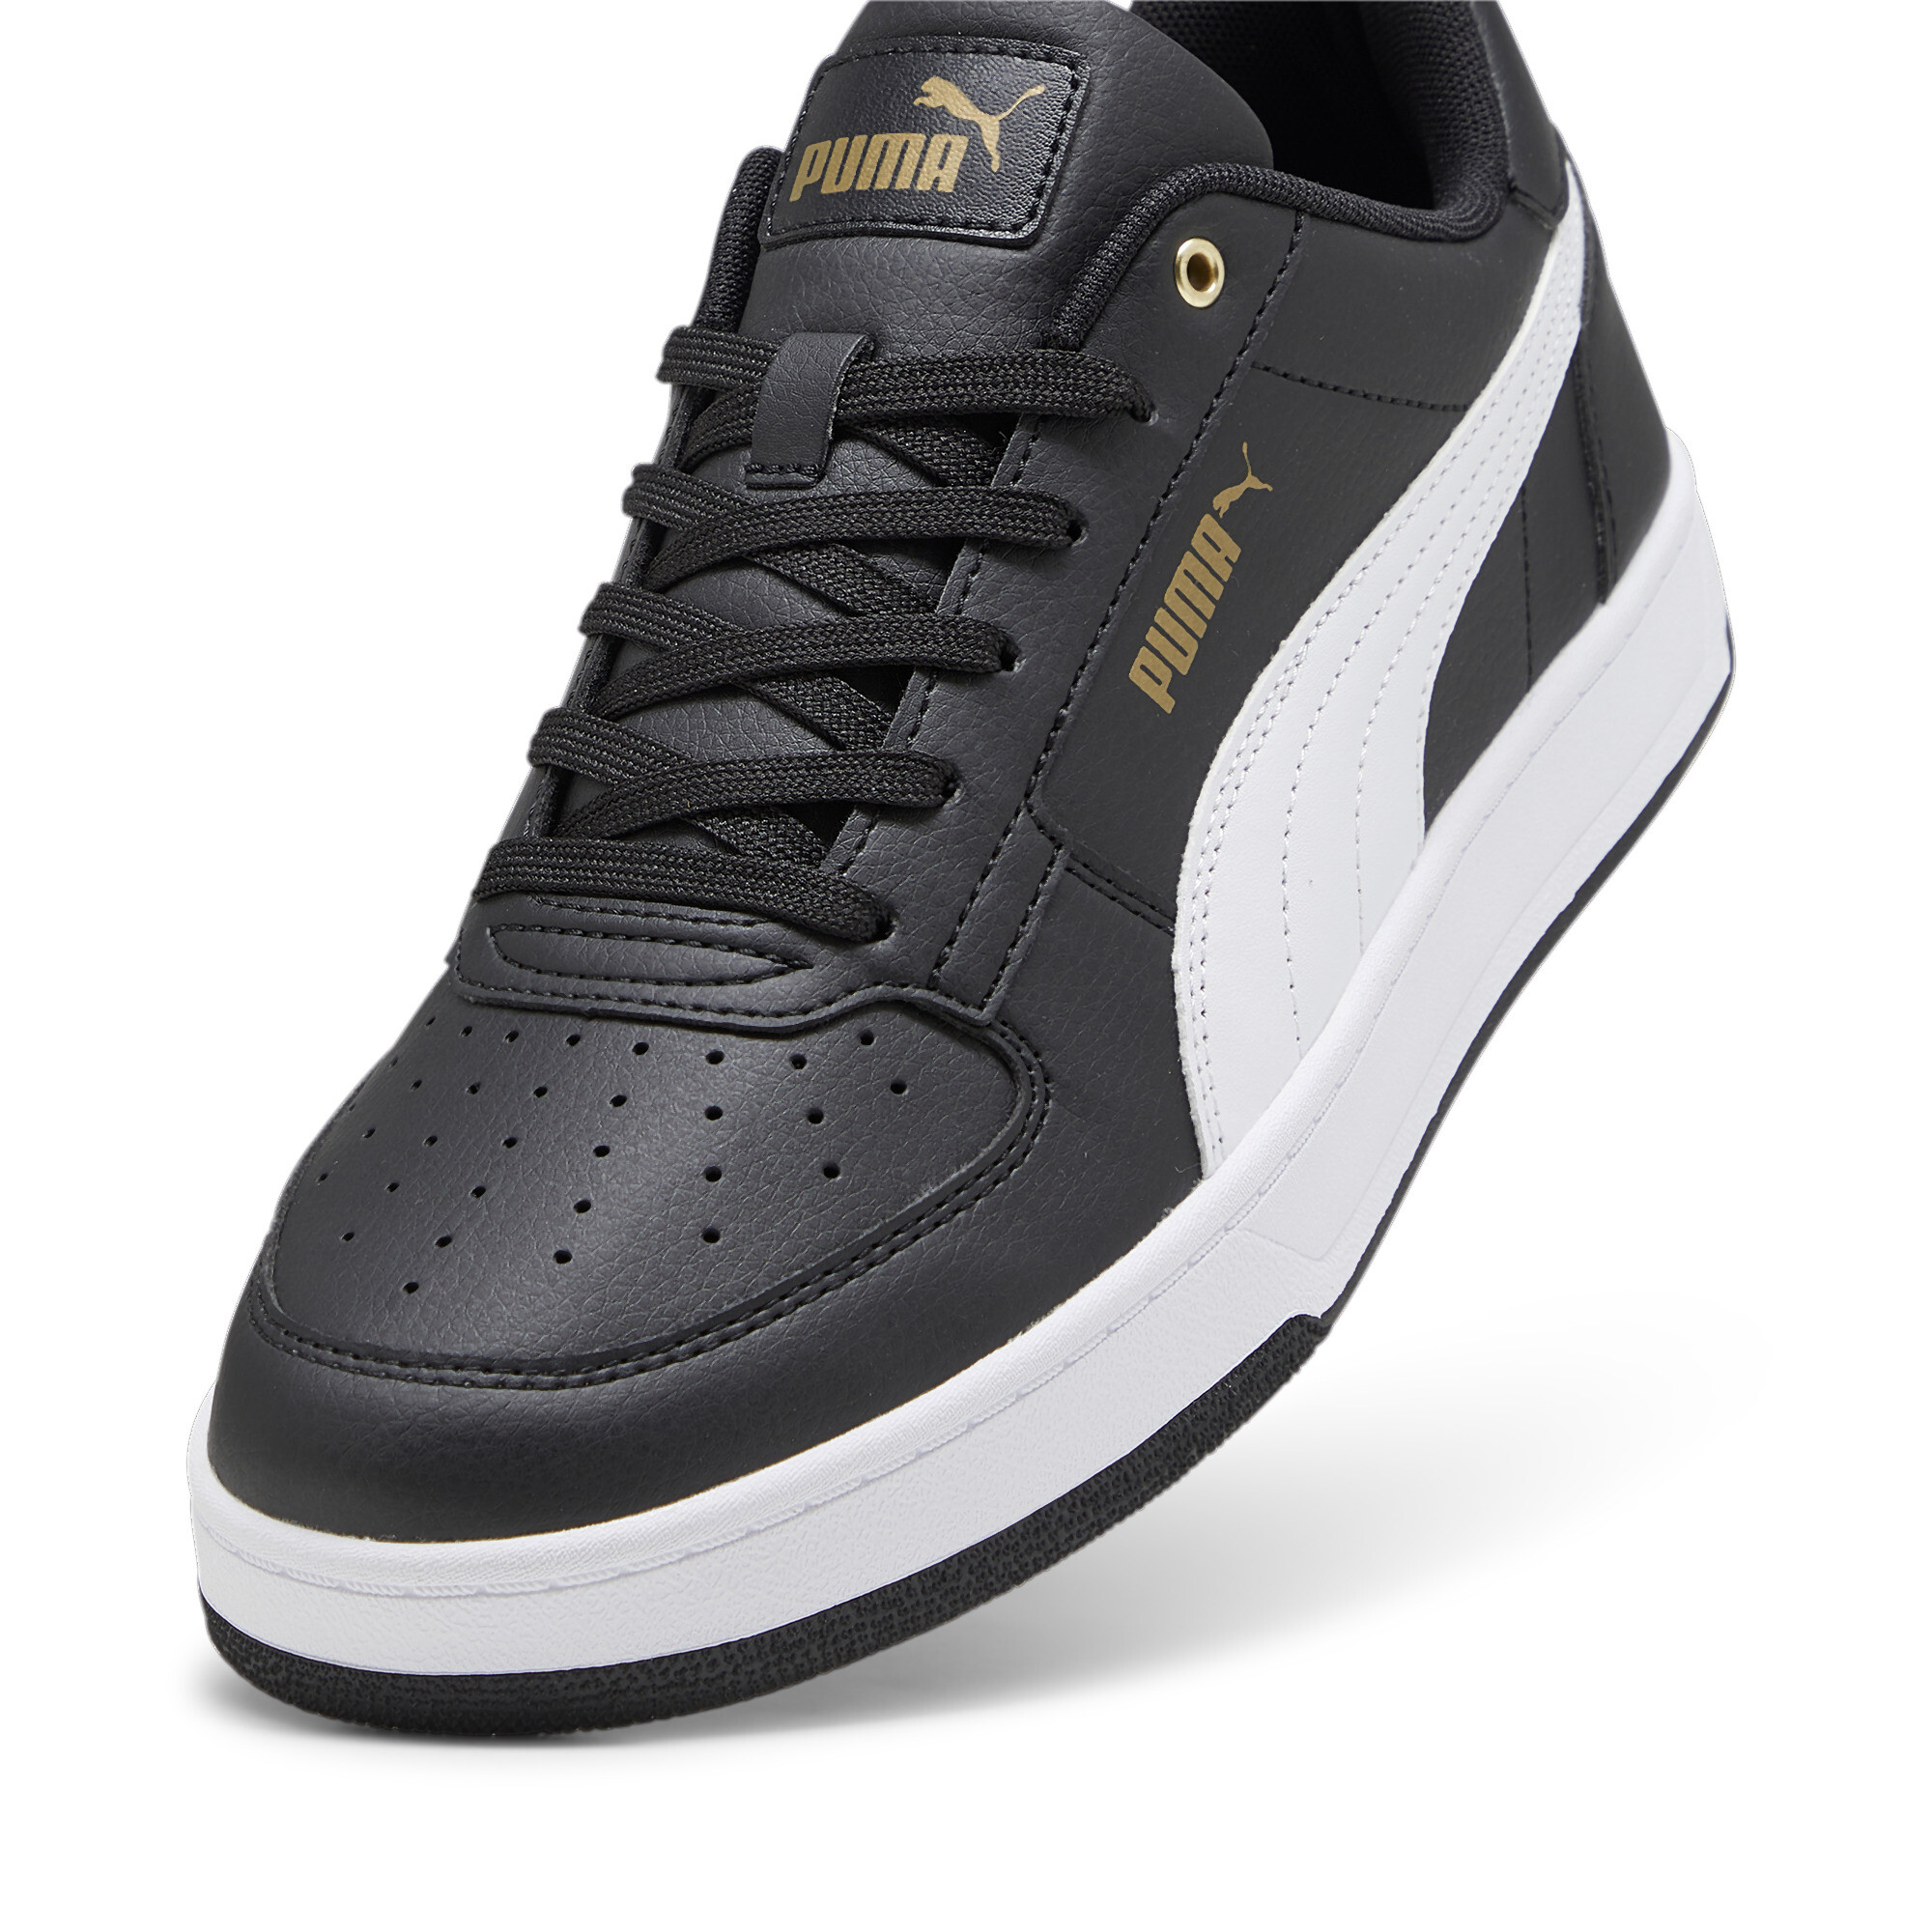 Men's PUMA Caven 2.0 Sneakers In Black/Gold, Size EU 45